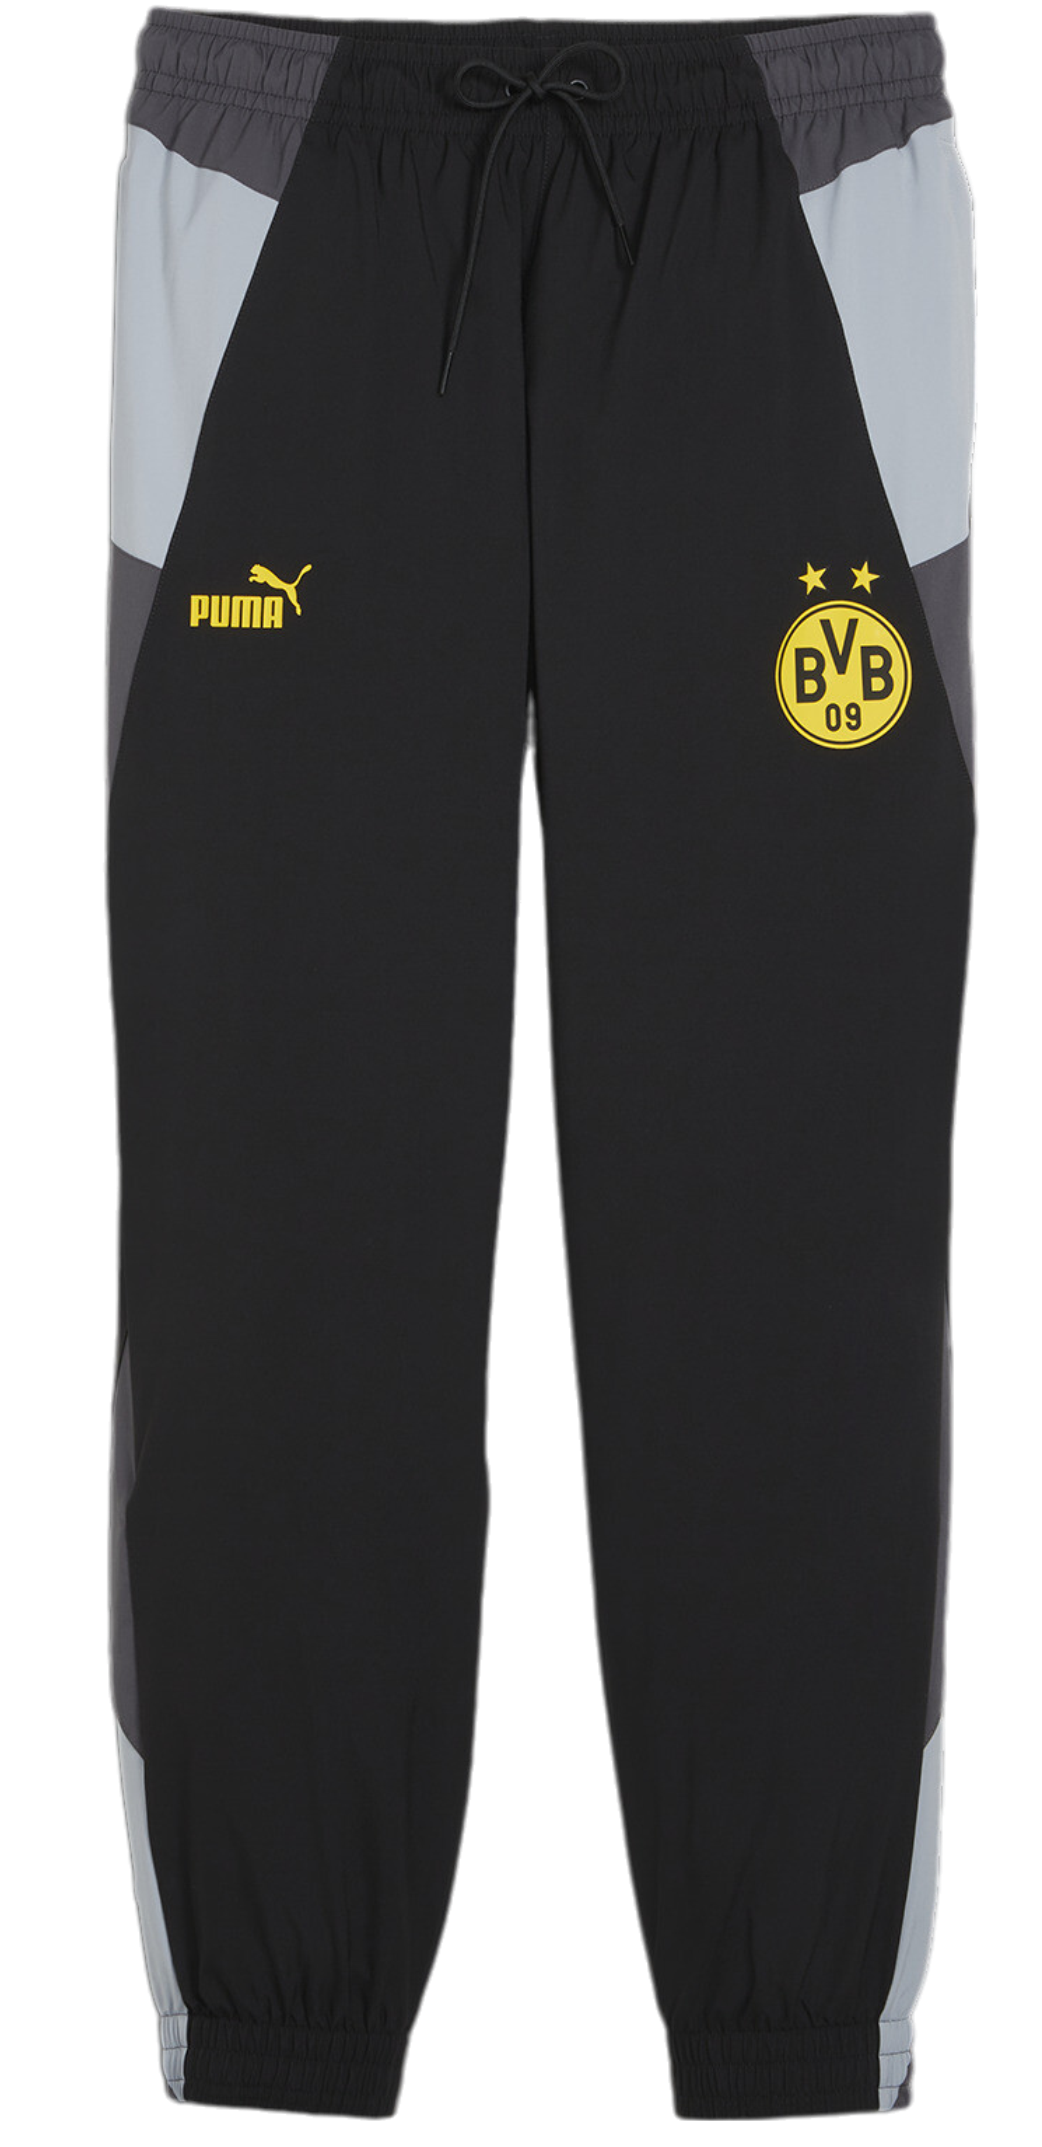 Pánské kalhoty Puma BVB Dortmund Woven